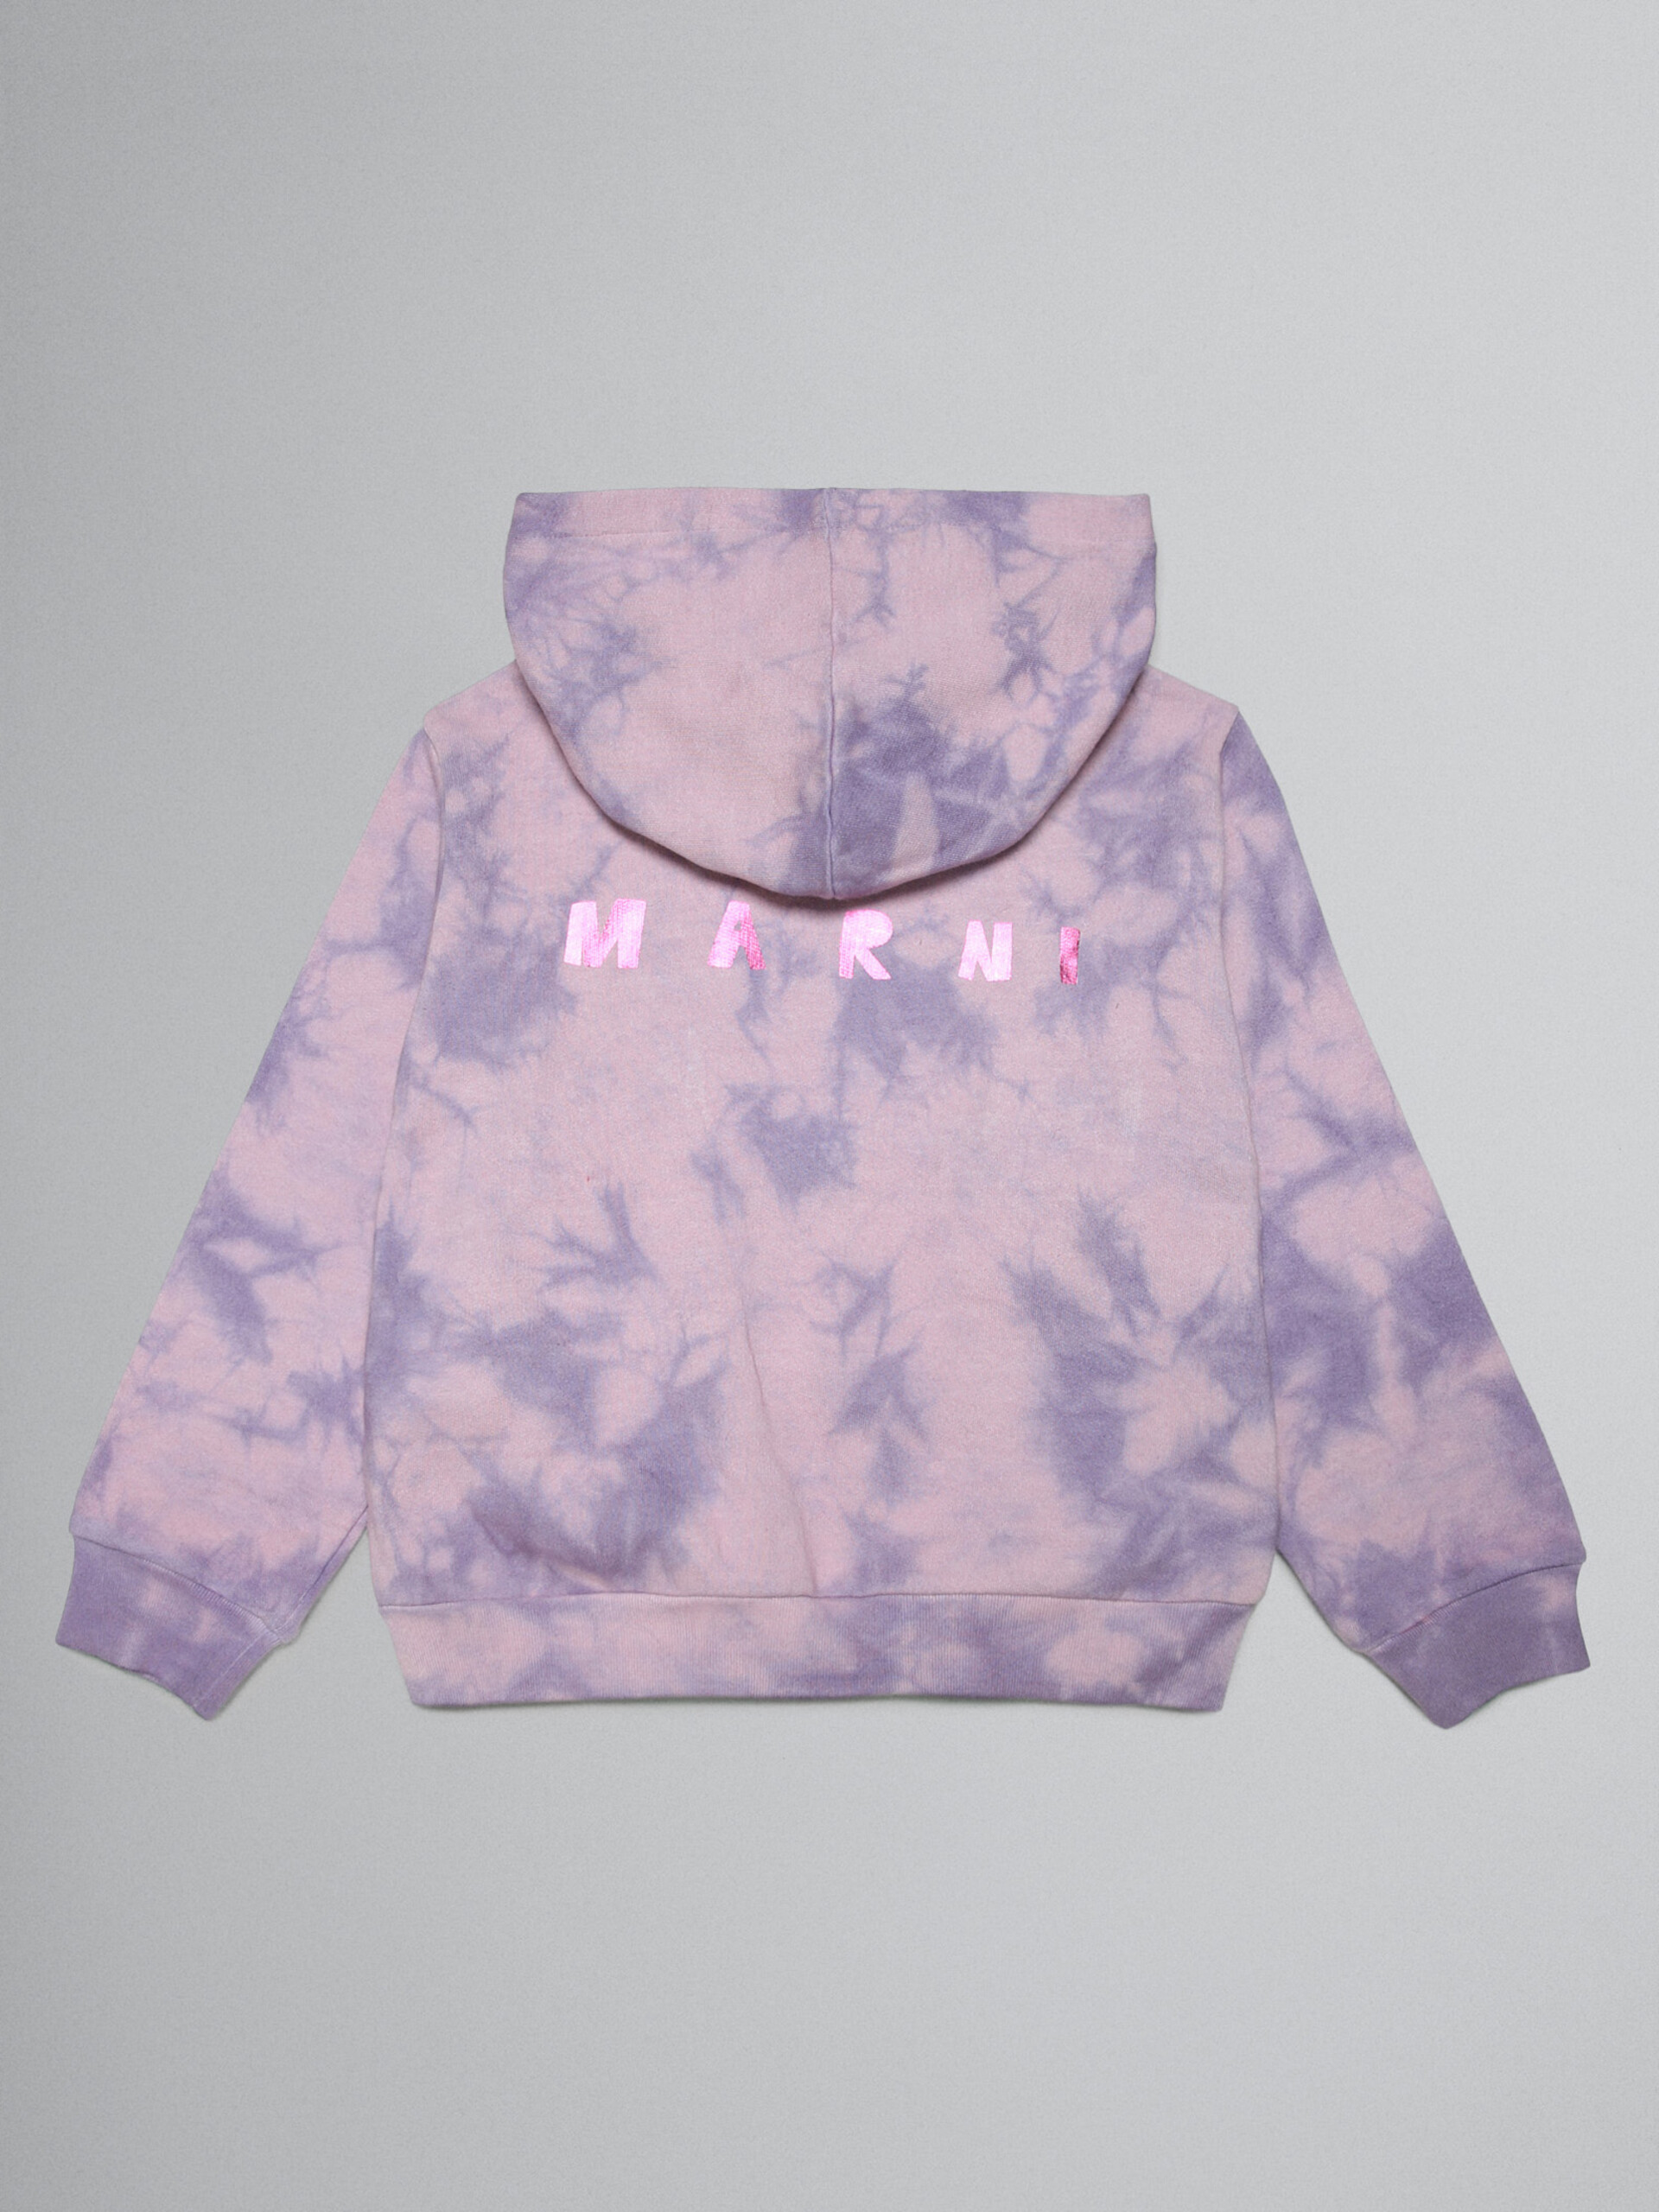 Lavender tie-dye hoodie with metallic logo prints - Sweaters - Image 2